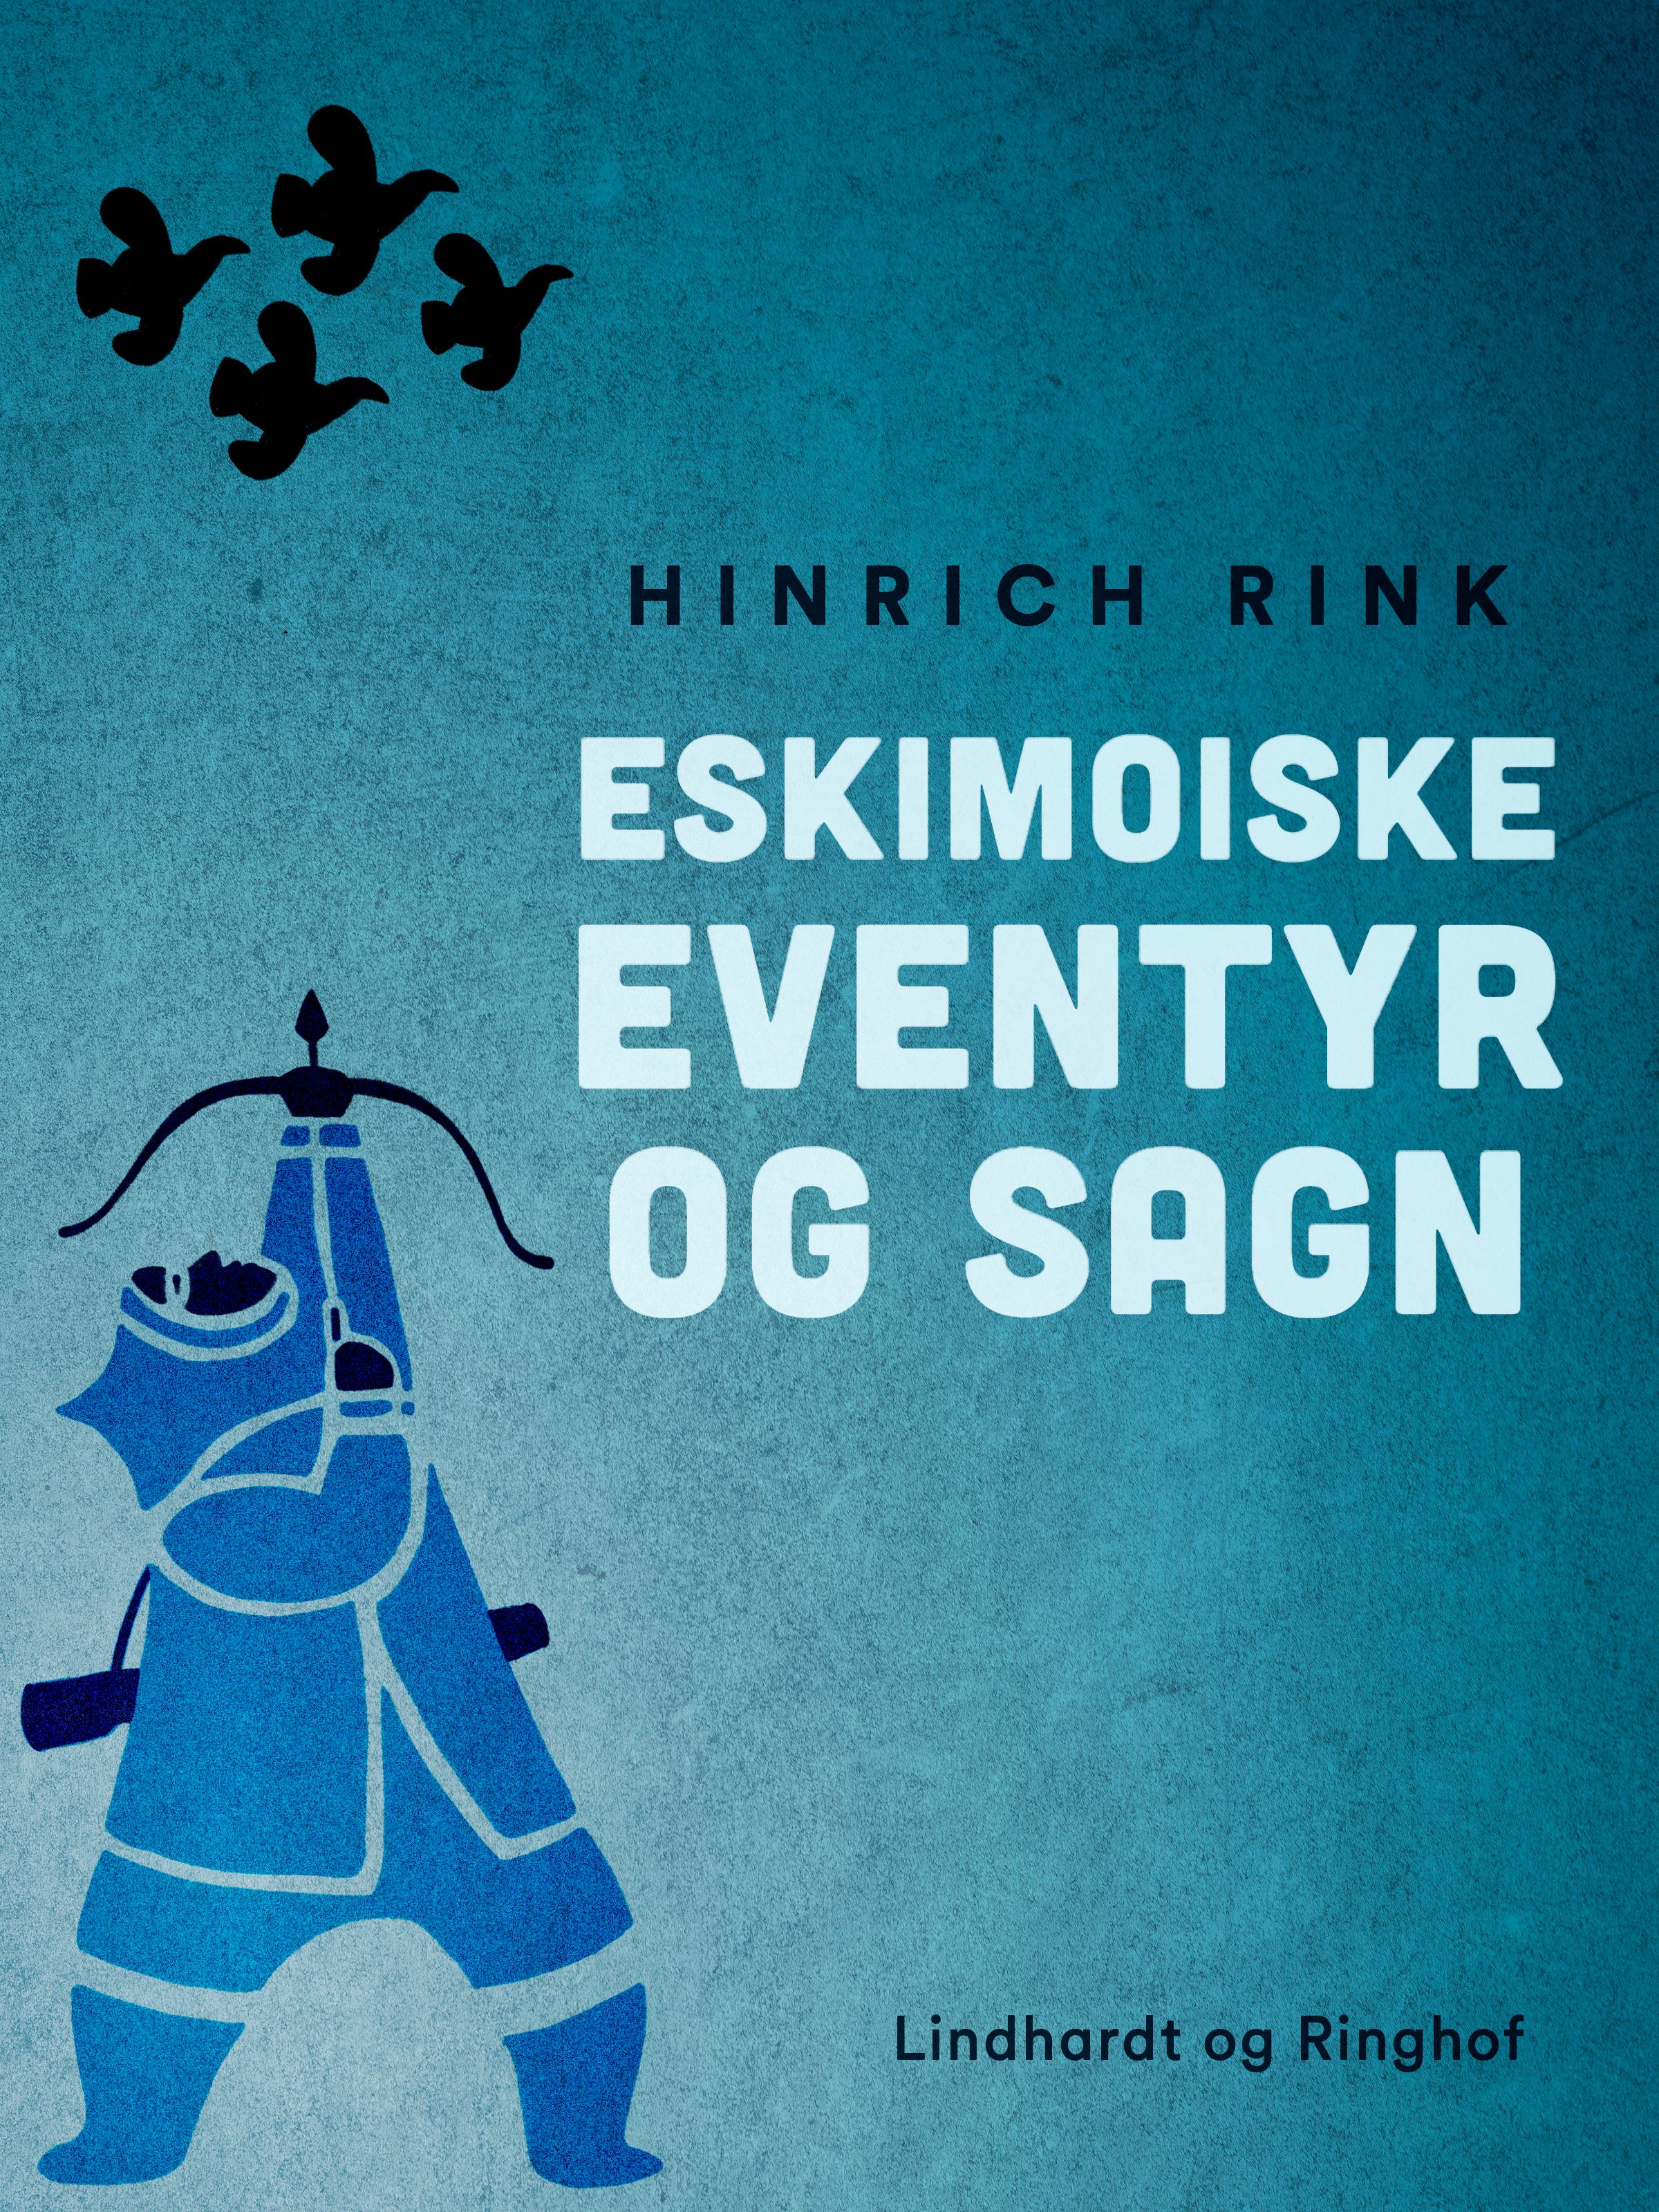 Eskimoiske eventyr og sagn, e-bog af Hinrich Rink